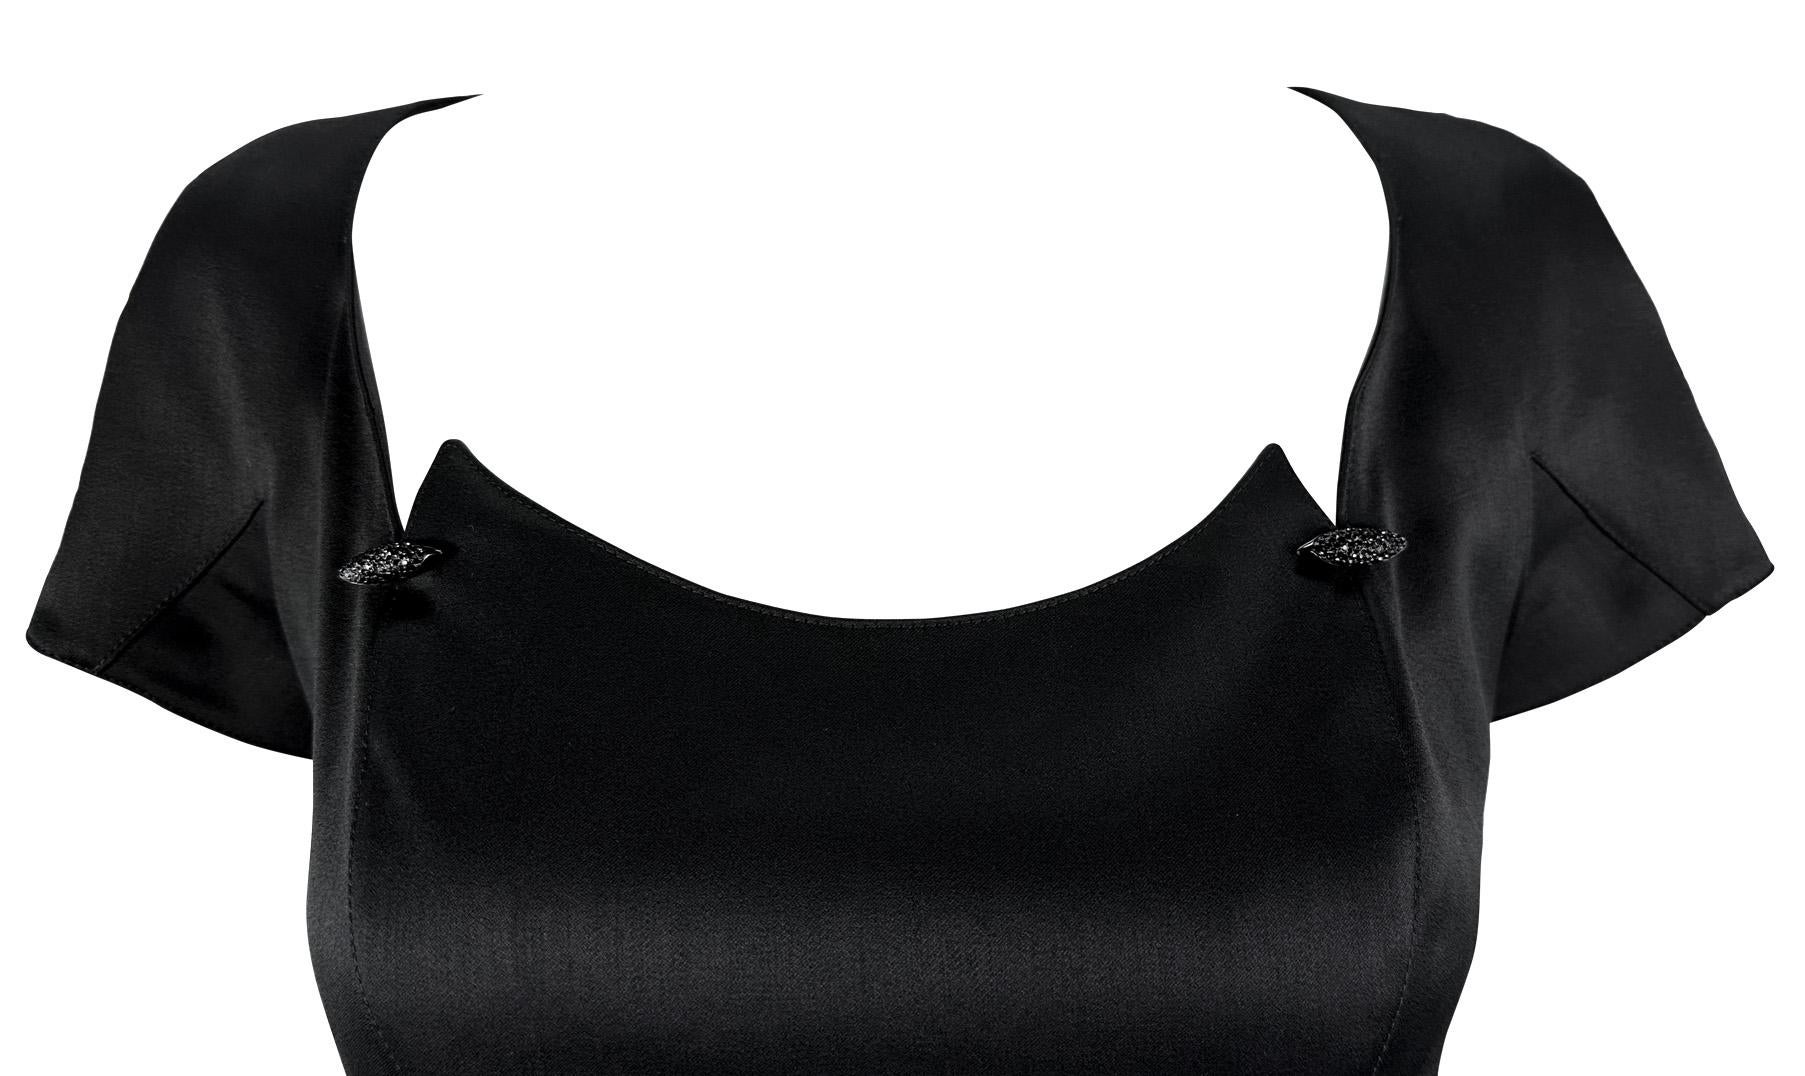 Manfred Mugler entwarf dieses fabelhafte kleine Schwarze für seine Thierry Mugler Frühjahr/Sommer-Kollektion 1999. Dieses schicke Kleid, das im Brustbereich mit kleinen Strasssteinchen verziert ist, fällt bis zum Knie und hat Ärmel im Blütenstil.